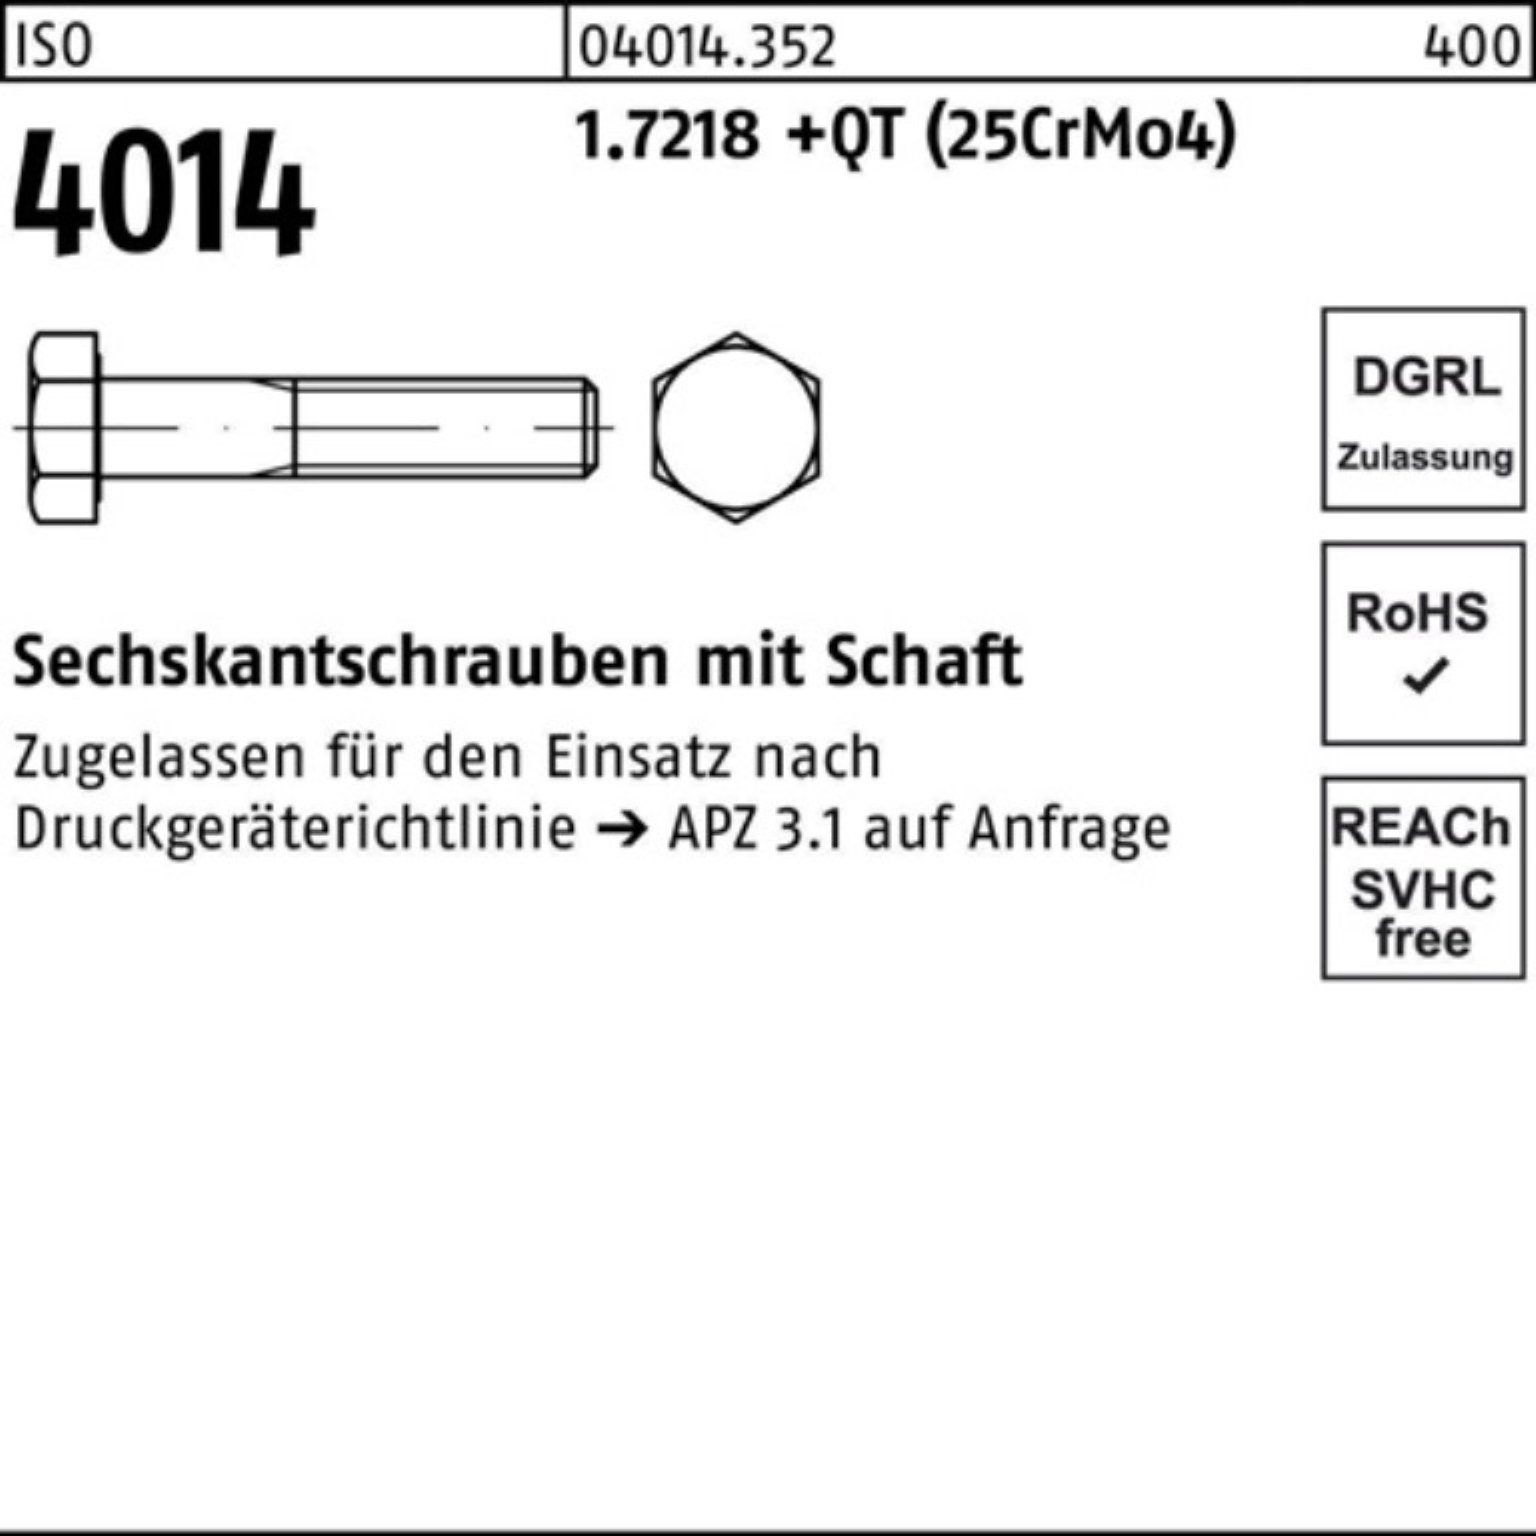 Schnäppchen Bufab Sechskantschraube 100er Pack Sechskantschraube 1.7218 160 M24x 4014 Schaft ISO +QT (25Cr